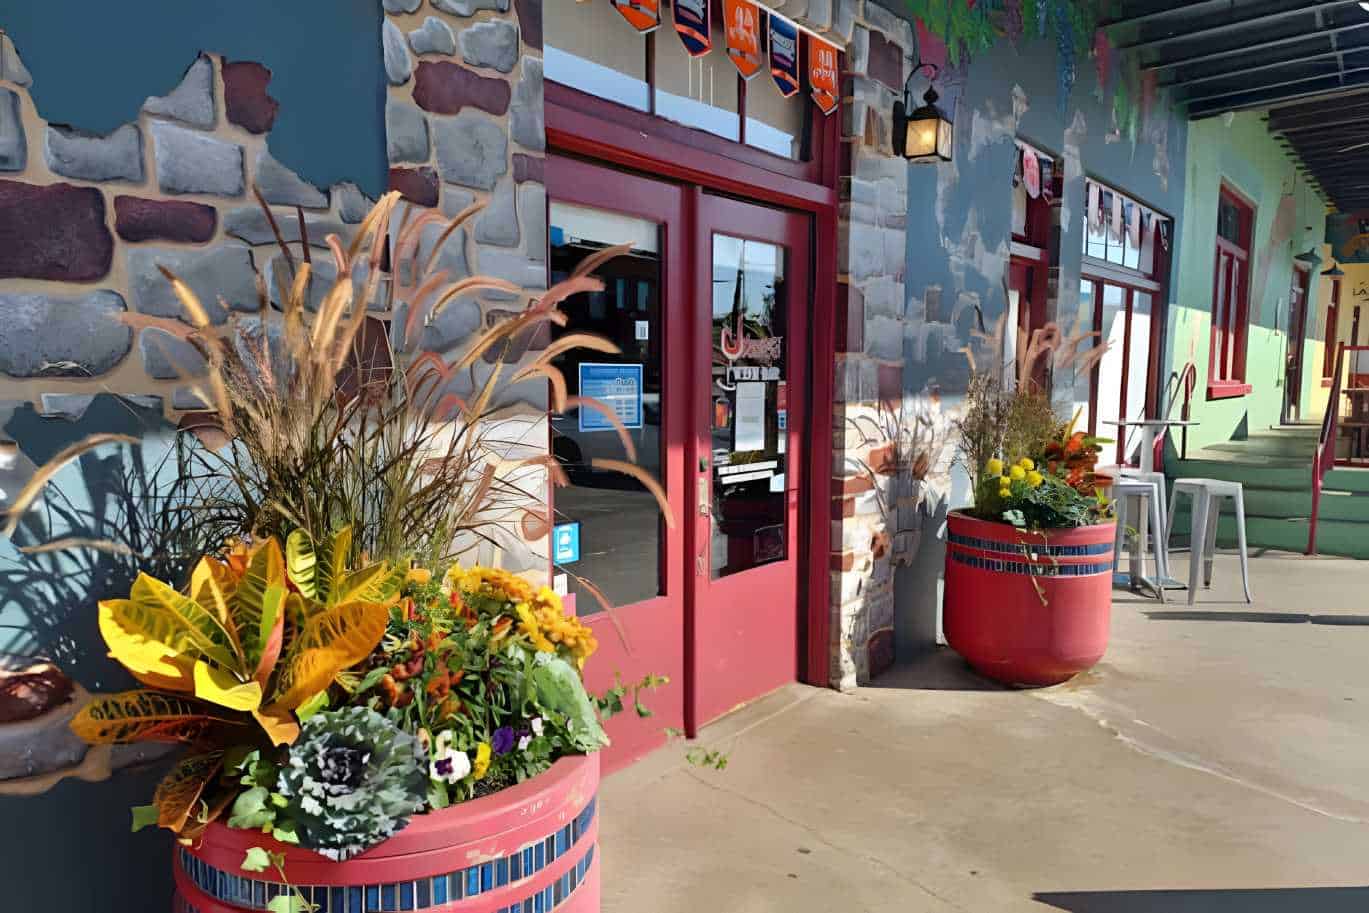 Steve's Wine Bar Best Restaurants in Denton, TX